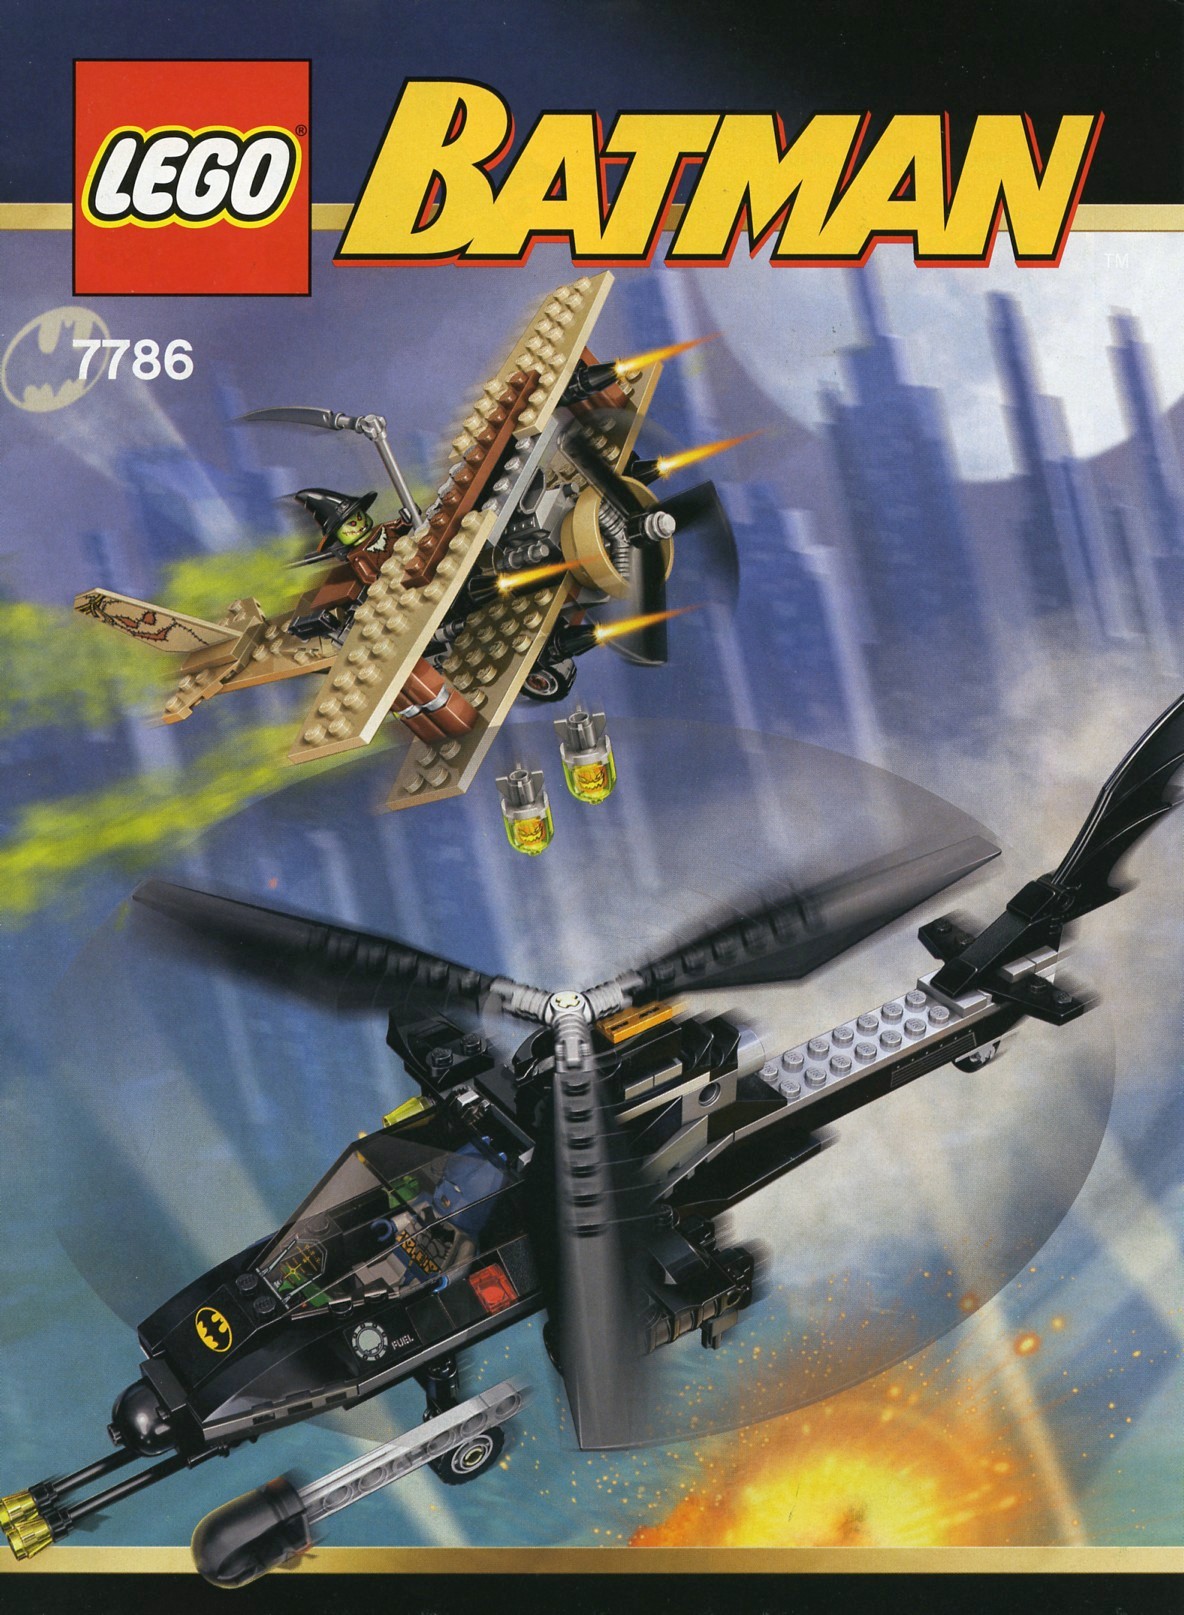 Batman | 2007 | Brickset: LEGO set guide and database